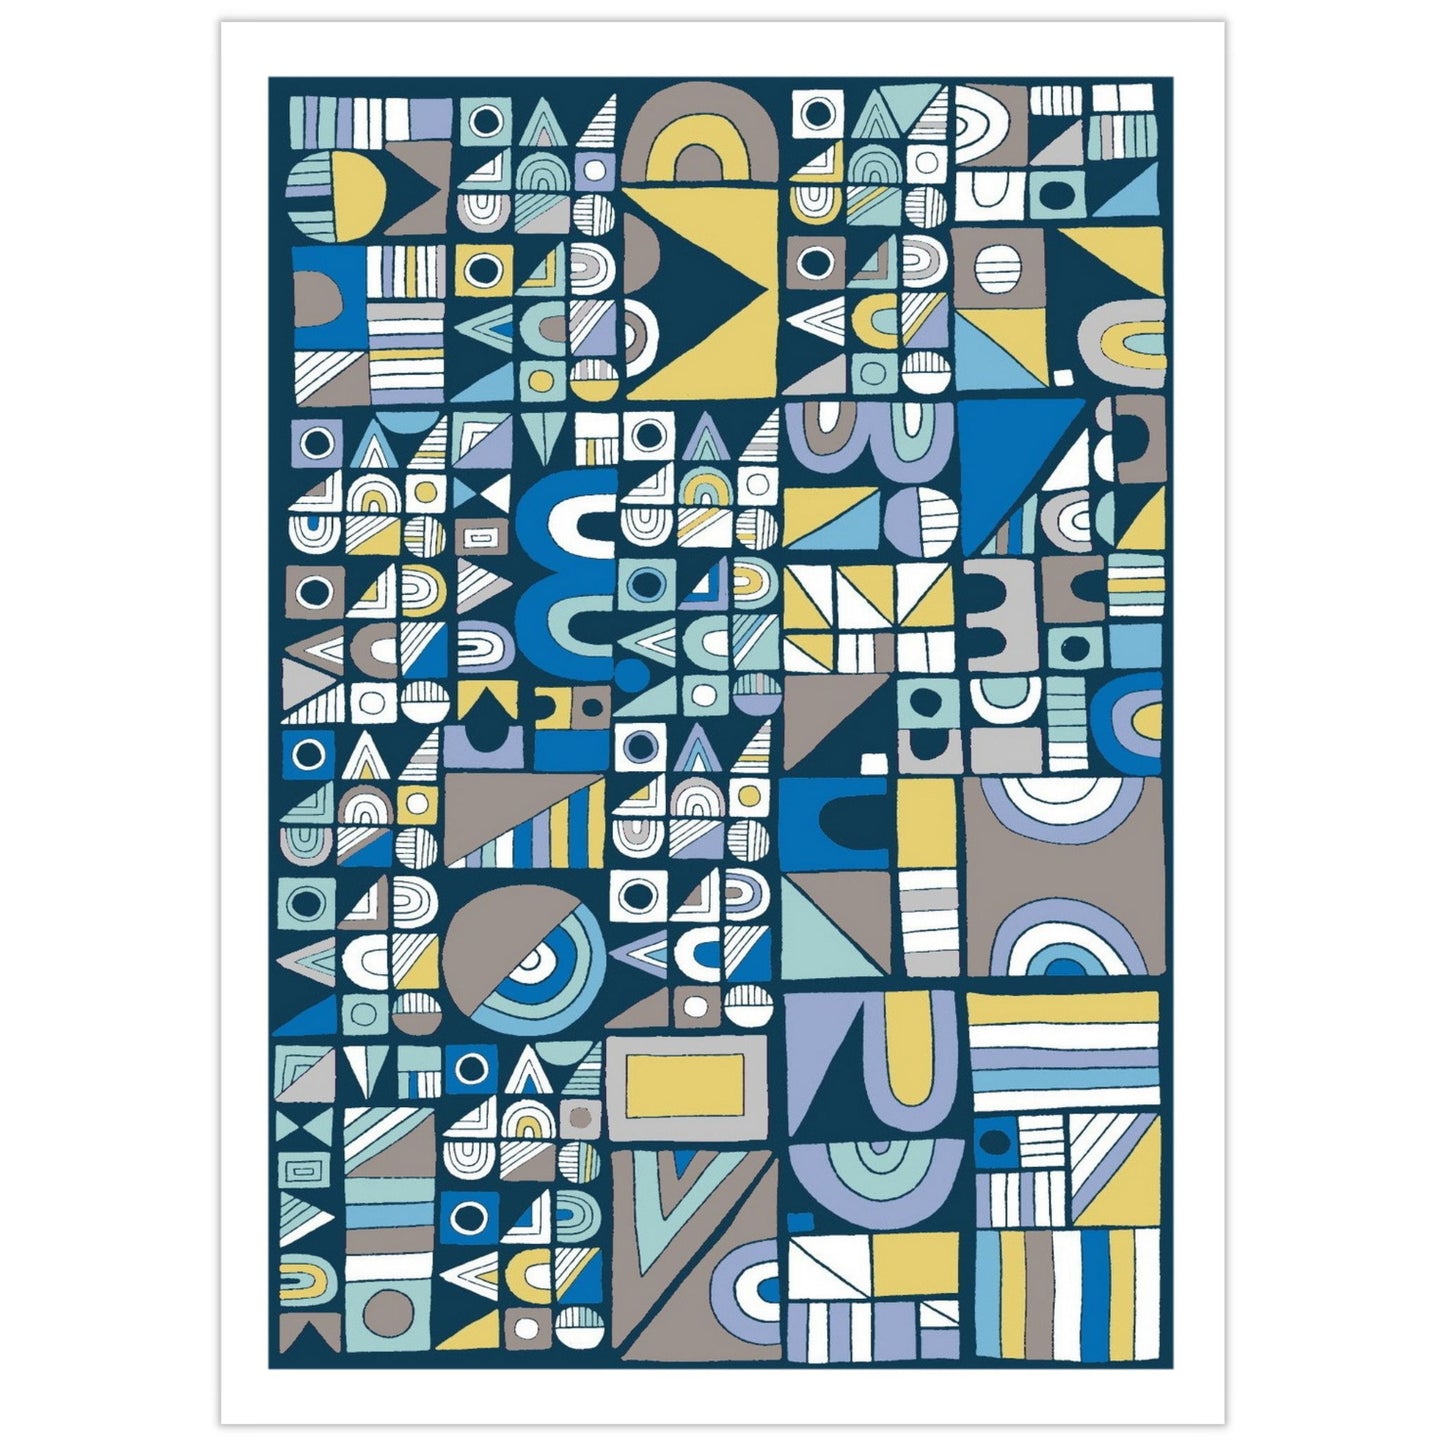 Plakat med geometrisk motiv i sirkler, trekanter, kvadrater og rektangler, i multi farger på mørk blå bunn.